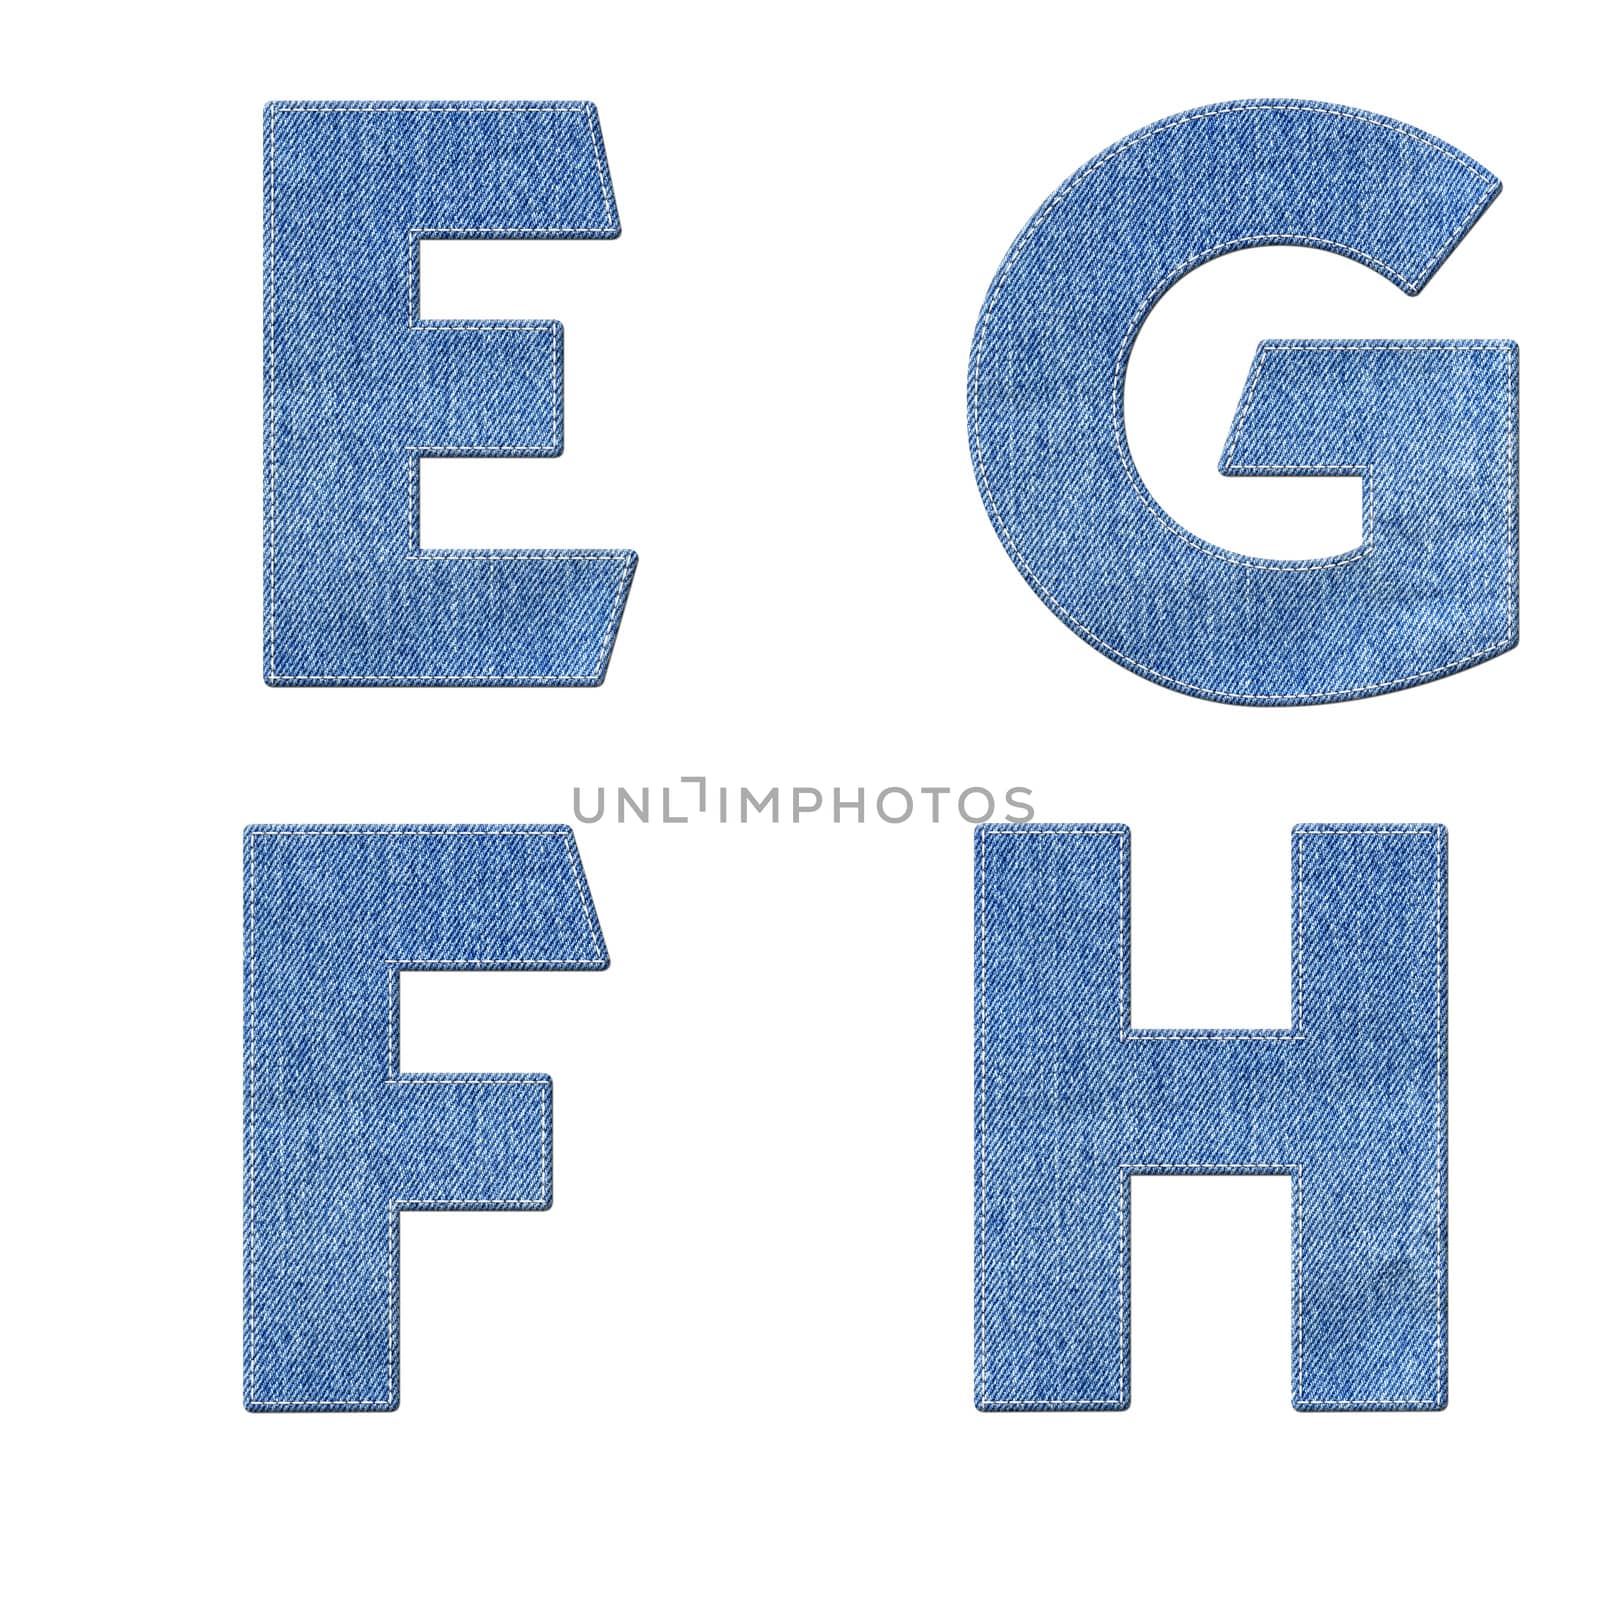 Alphabet with stitch design elements on denim texture